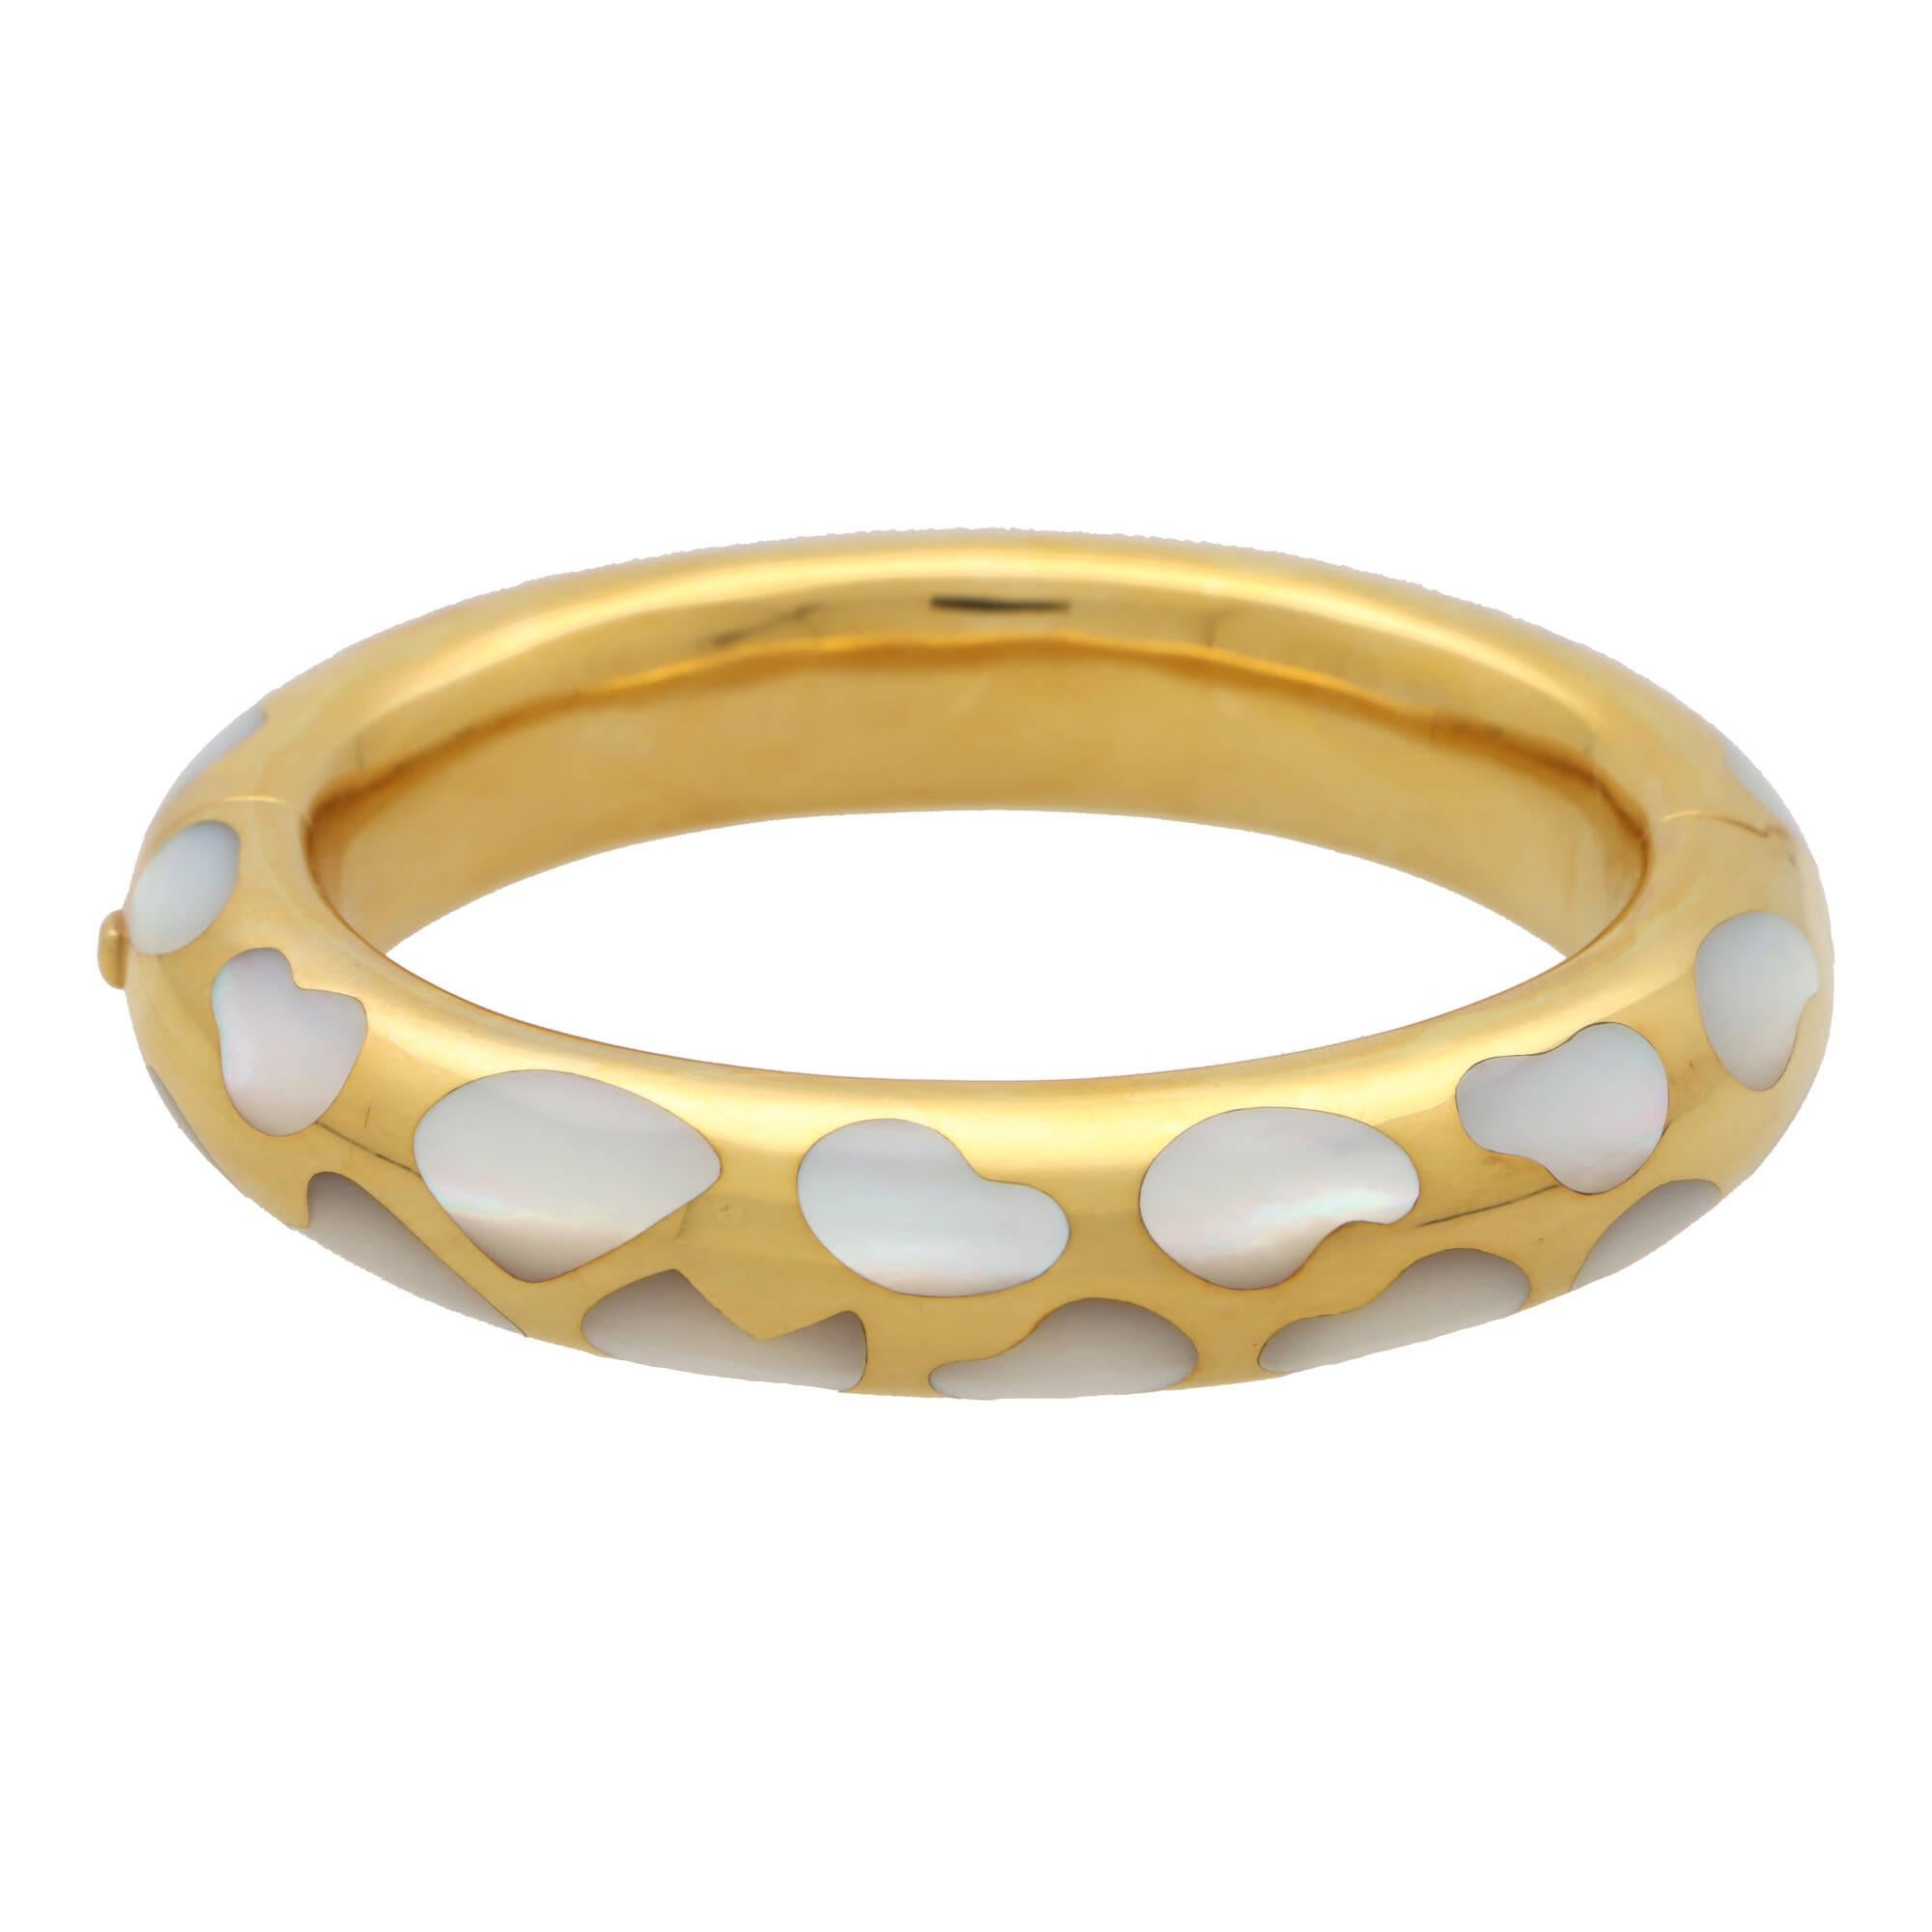 
Magnifique bracelet en nacre d'Angela Cumings pour Tiffany & Co., serti dans de l'or jaune 18 carats.

Issu de la collection 